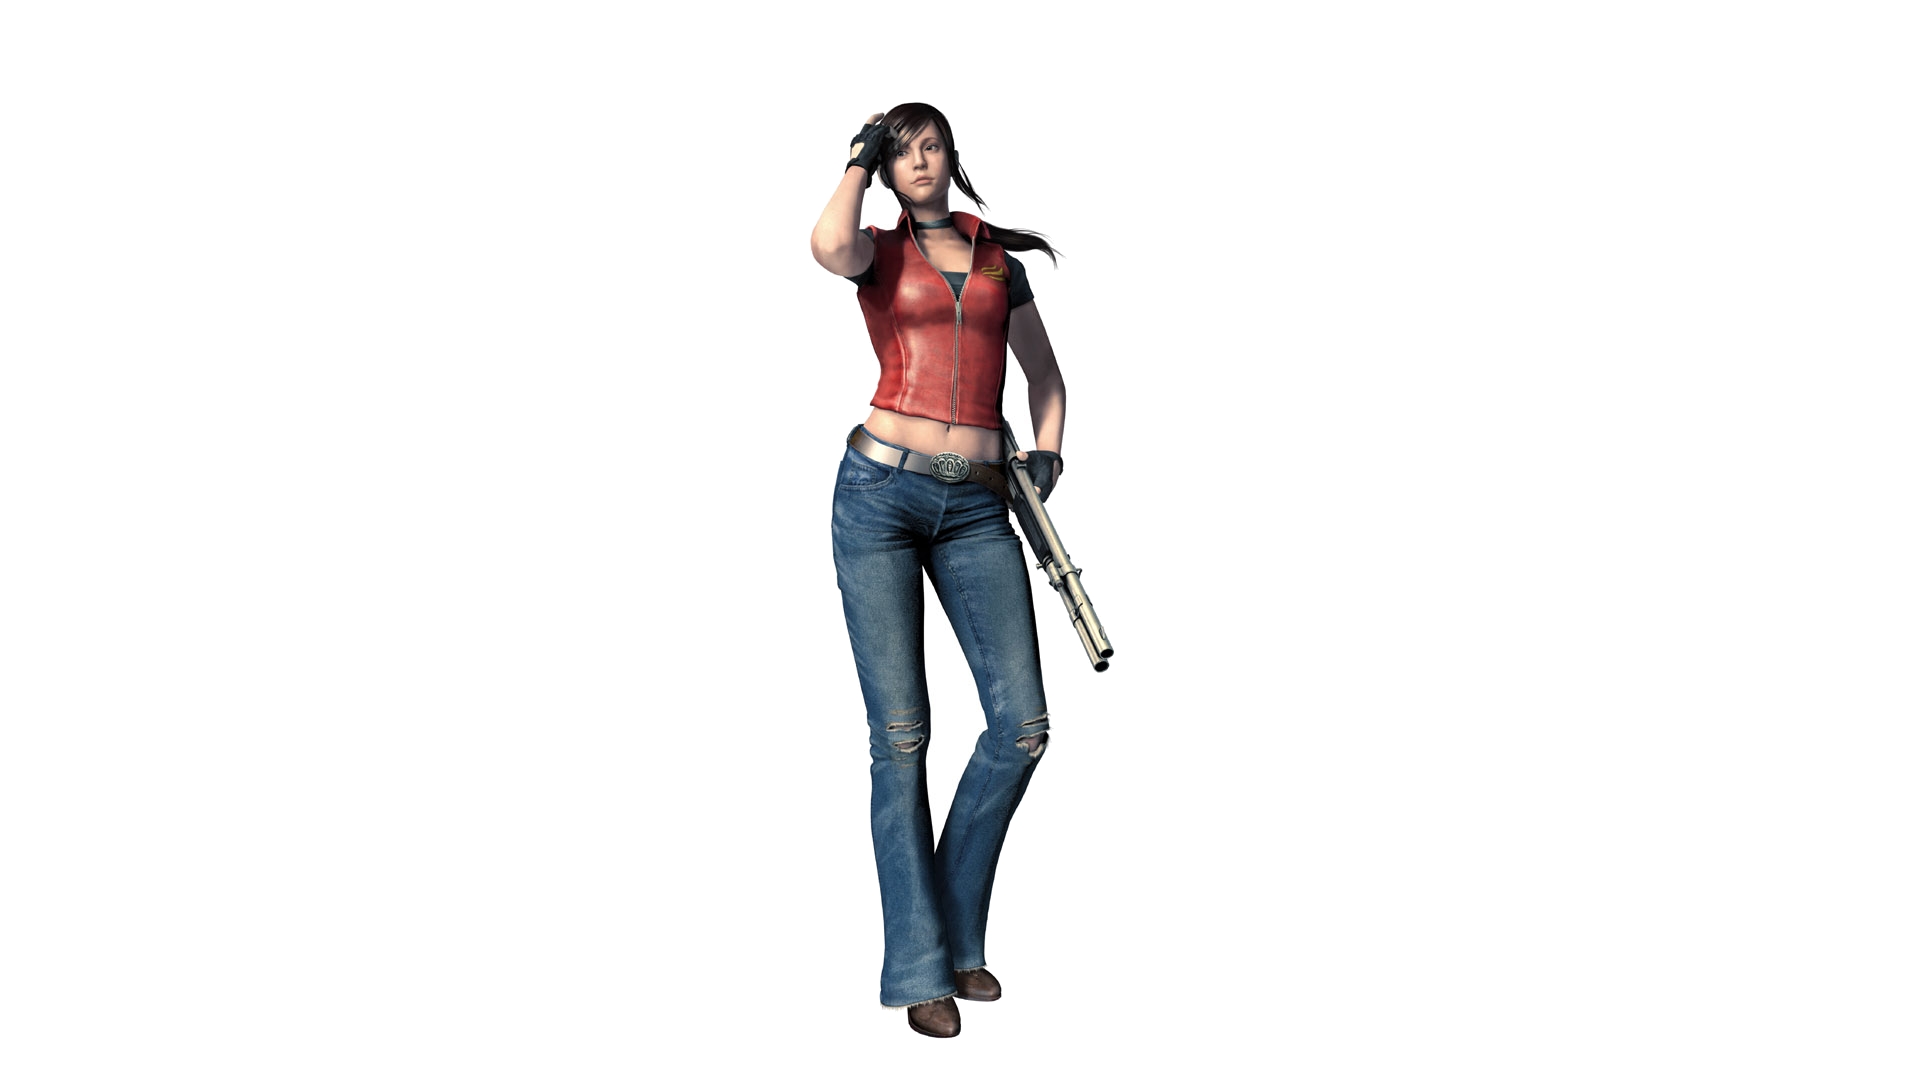 Los mejores fondos de pantalla de Resident Evil: The Mercenaries 3D para la pantalla del teléfono